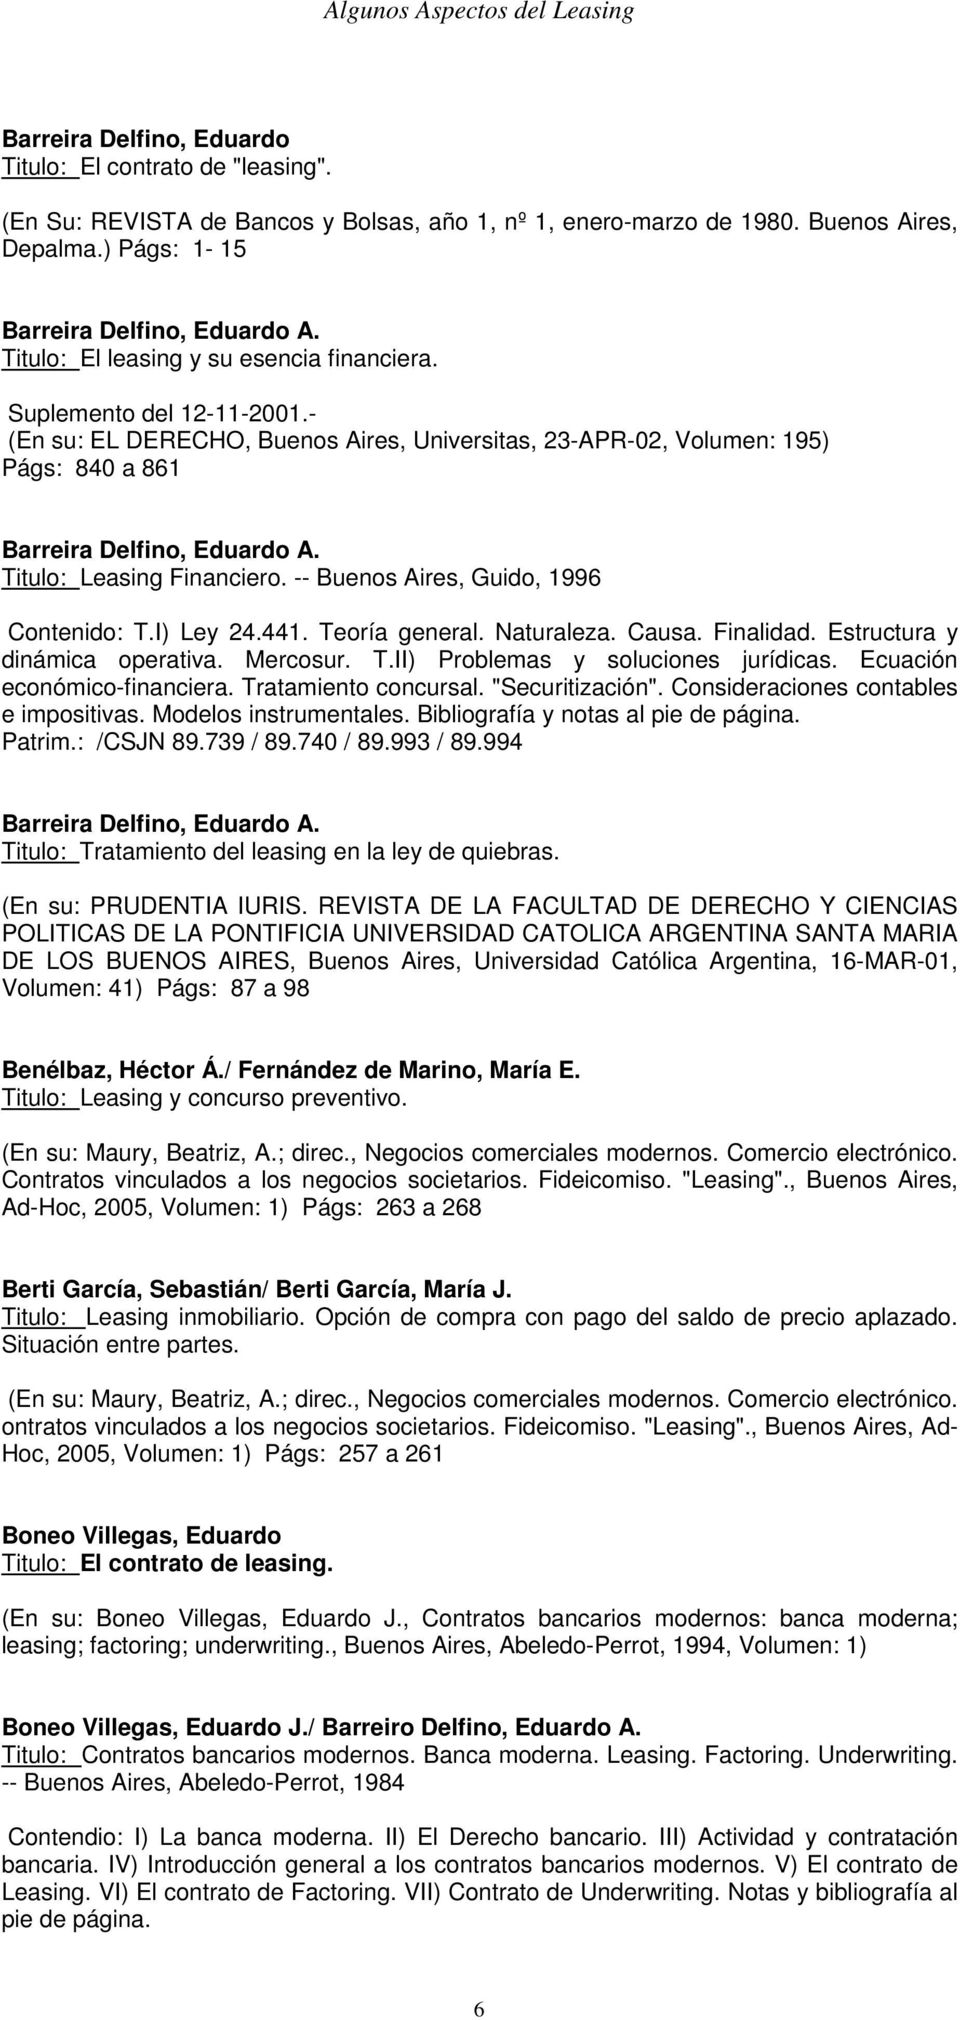 Titulo: Leasing Financiero. -- Buenos Aires, Guido, 1996 Contenido: T.I) Ley 24.441. Teoría general. Naturaleza. Causa. Finalidad. Estructura y dinámica operativa. Mercosur. T.II) Problemas y soluciones jurídicas.